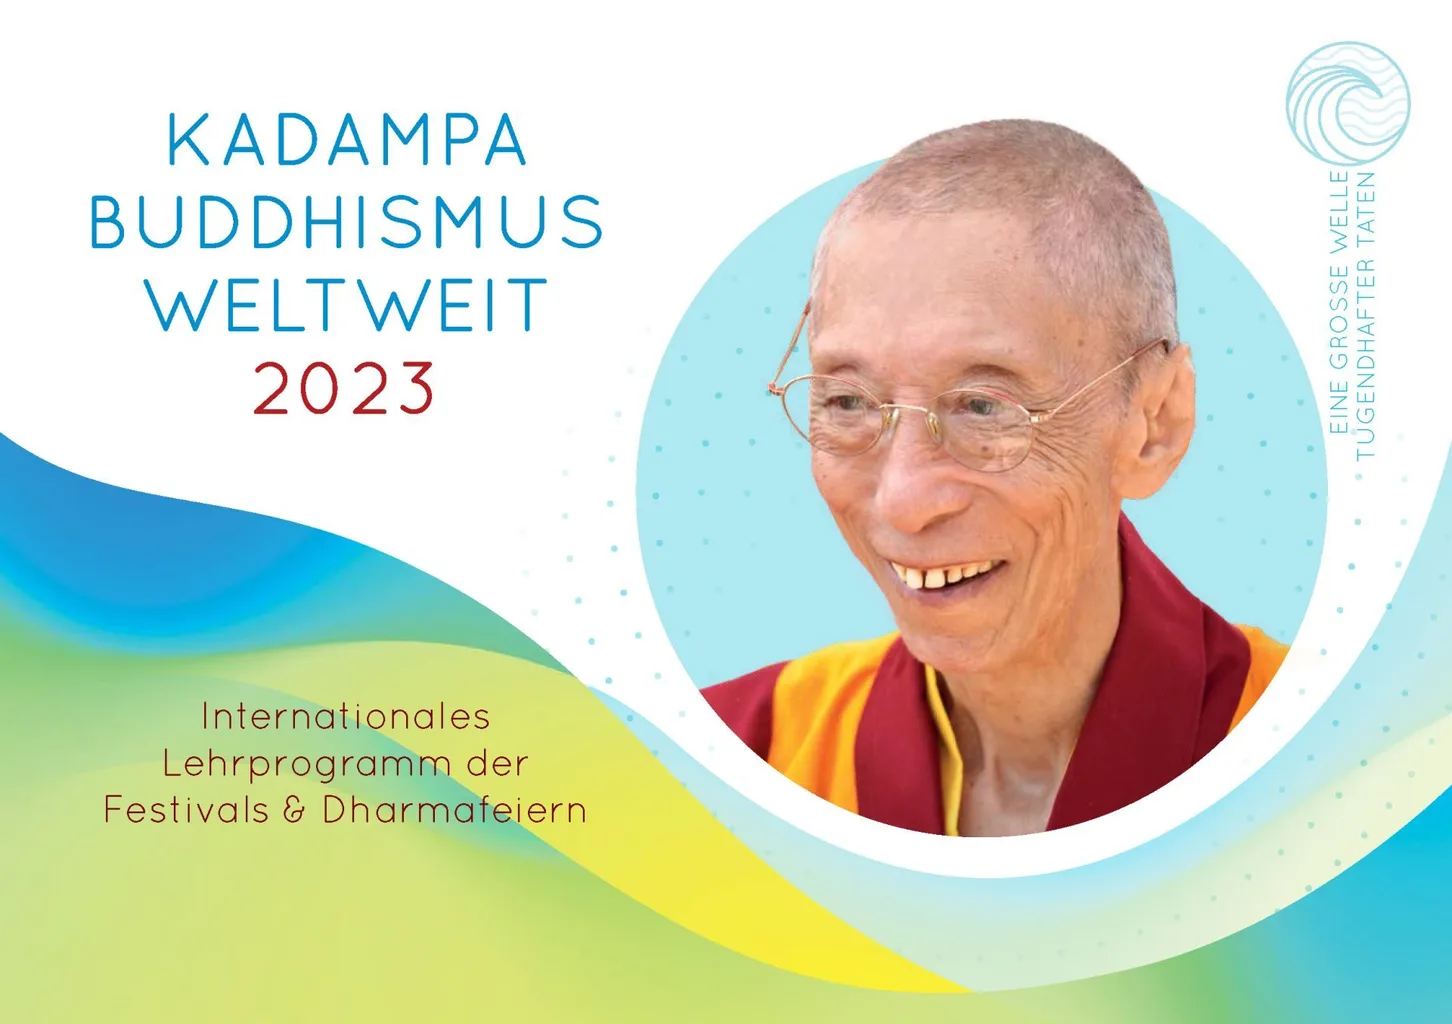 Kadampa Buddhismus weltweit 2023